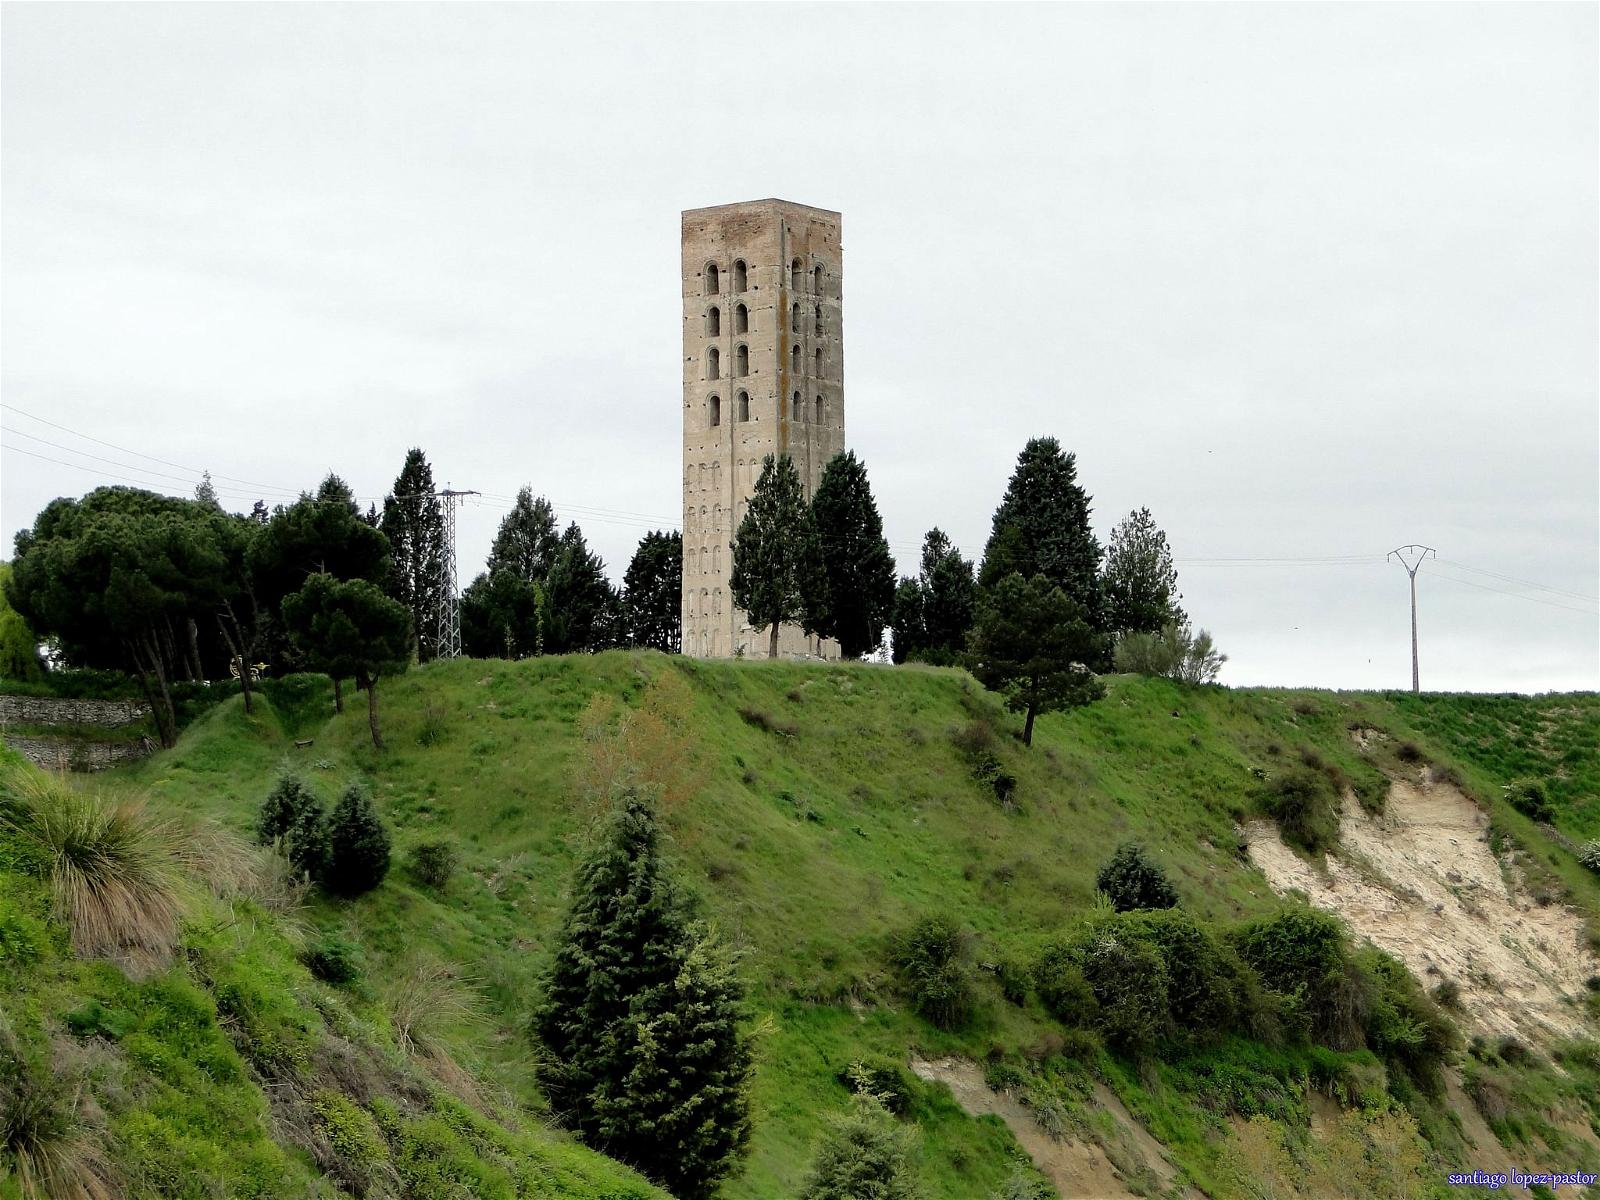 Изображение Torre de San Nicolás. españa tower spain torre medieval segovia romanesque espagne middleages castilla castillayleón románico provinciadesegovia